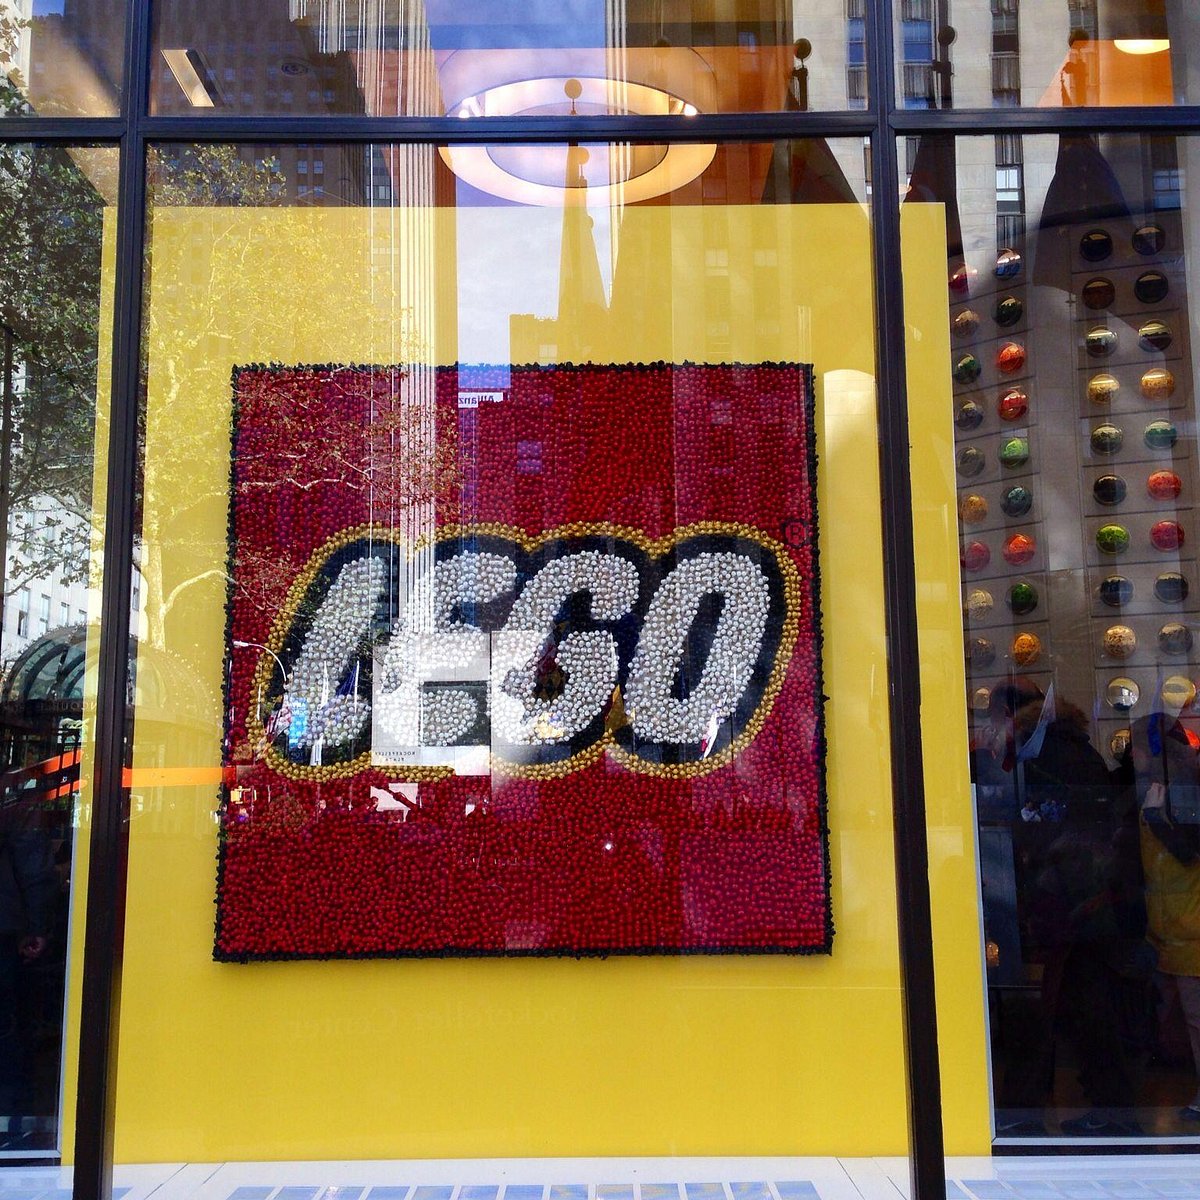 Inside the Lego Store in Rockefeller Center in New York City